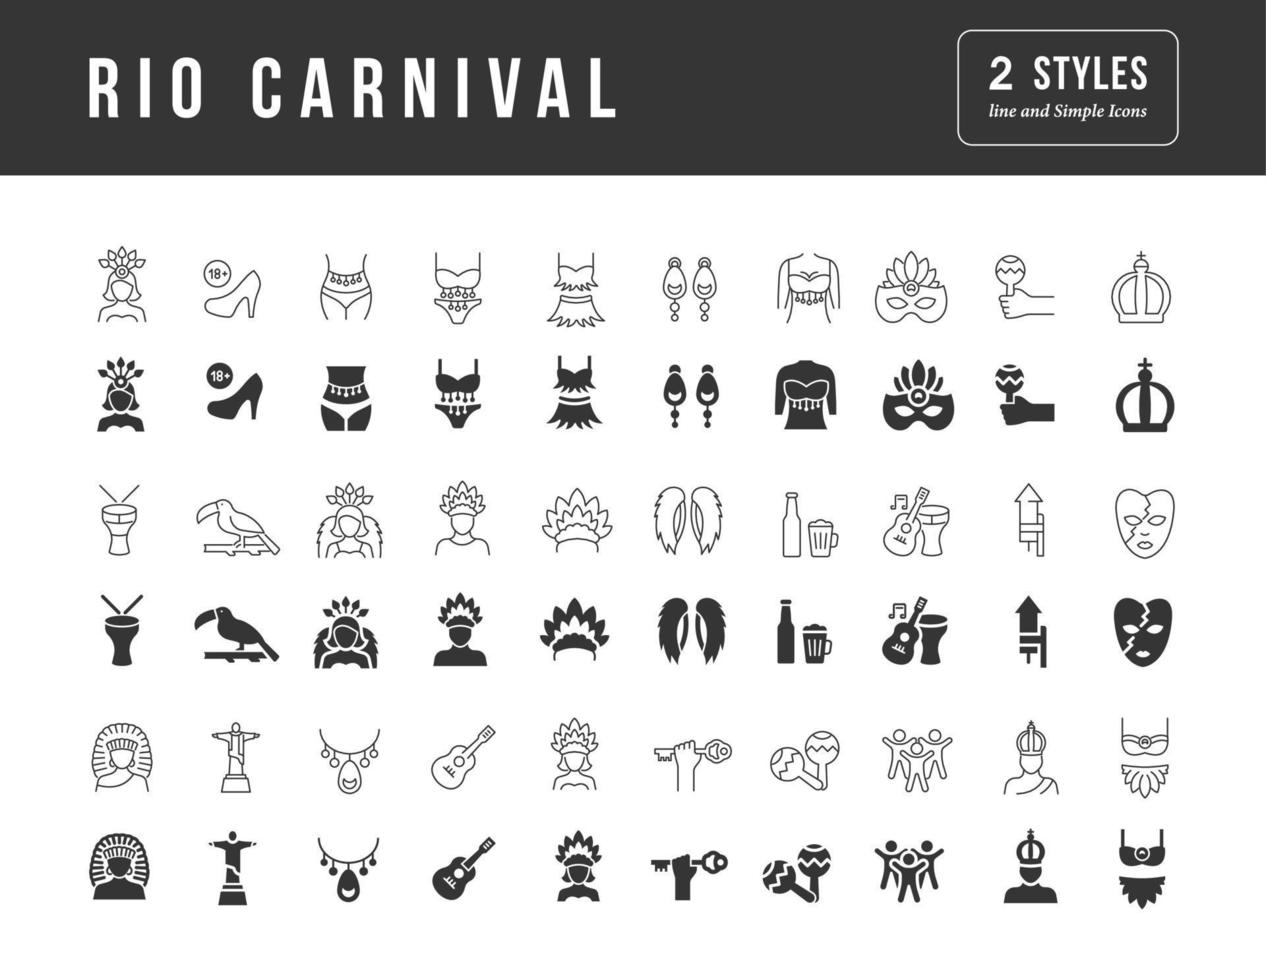 icônes vectorielles simples du carnaval de rio vecteur